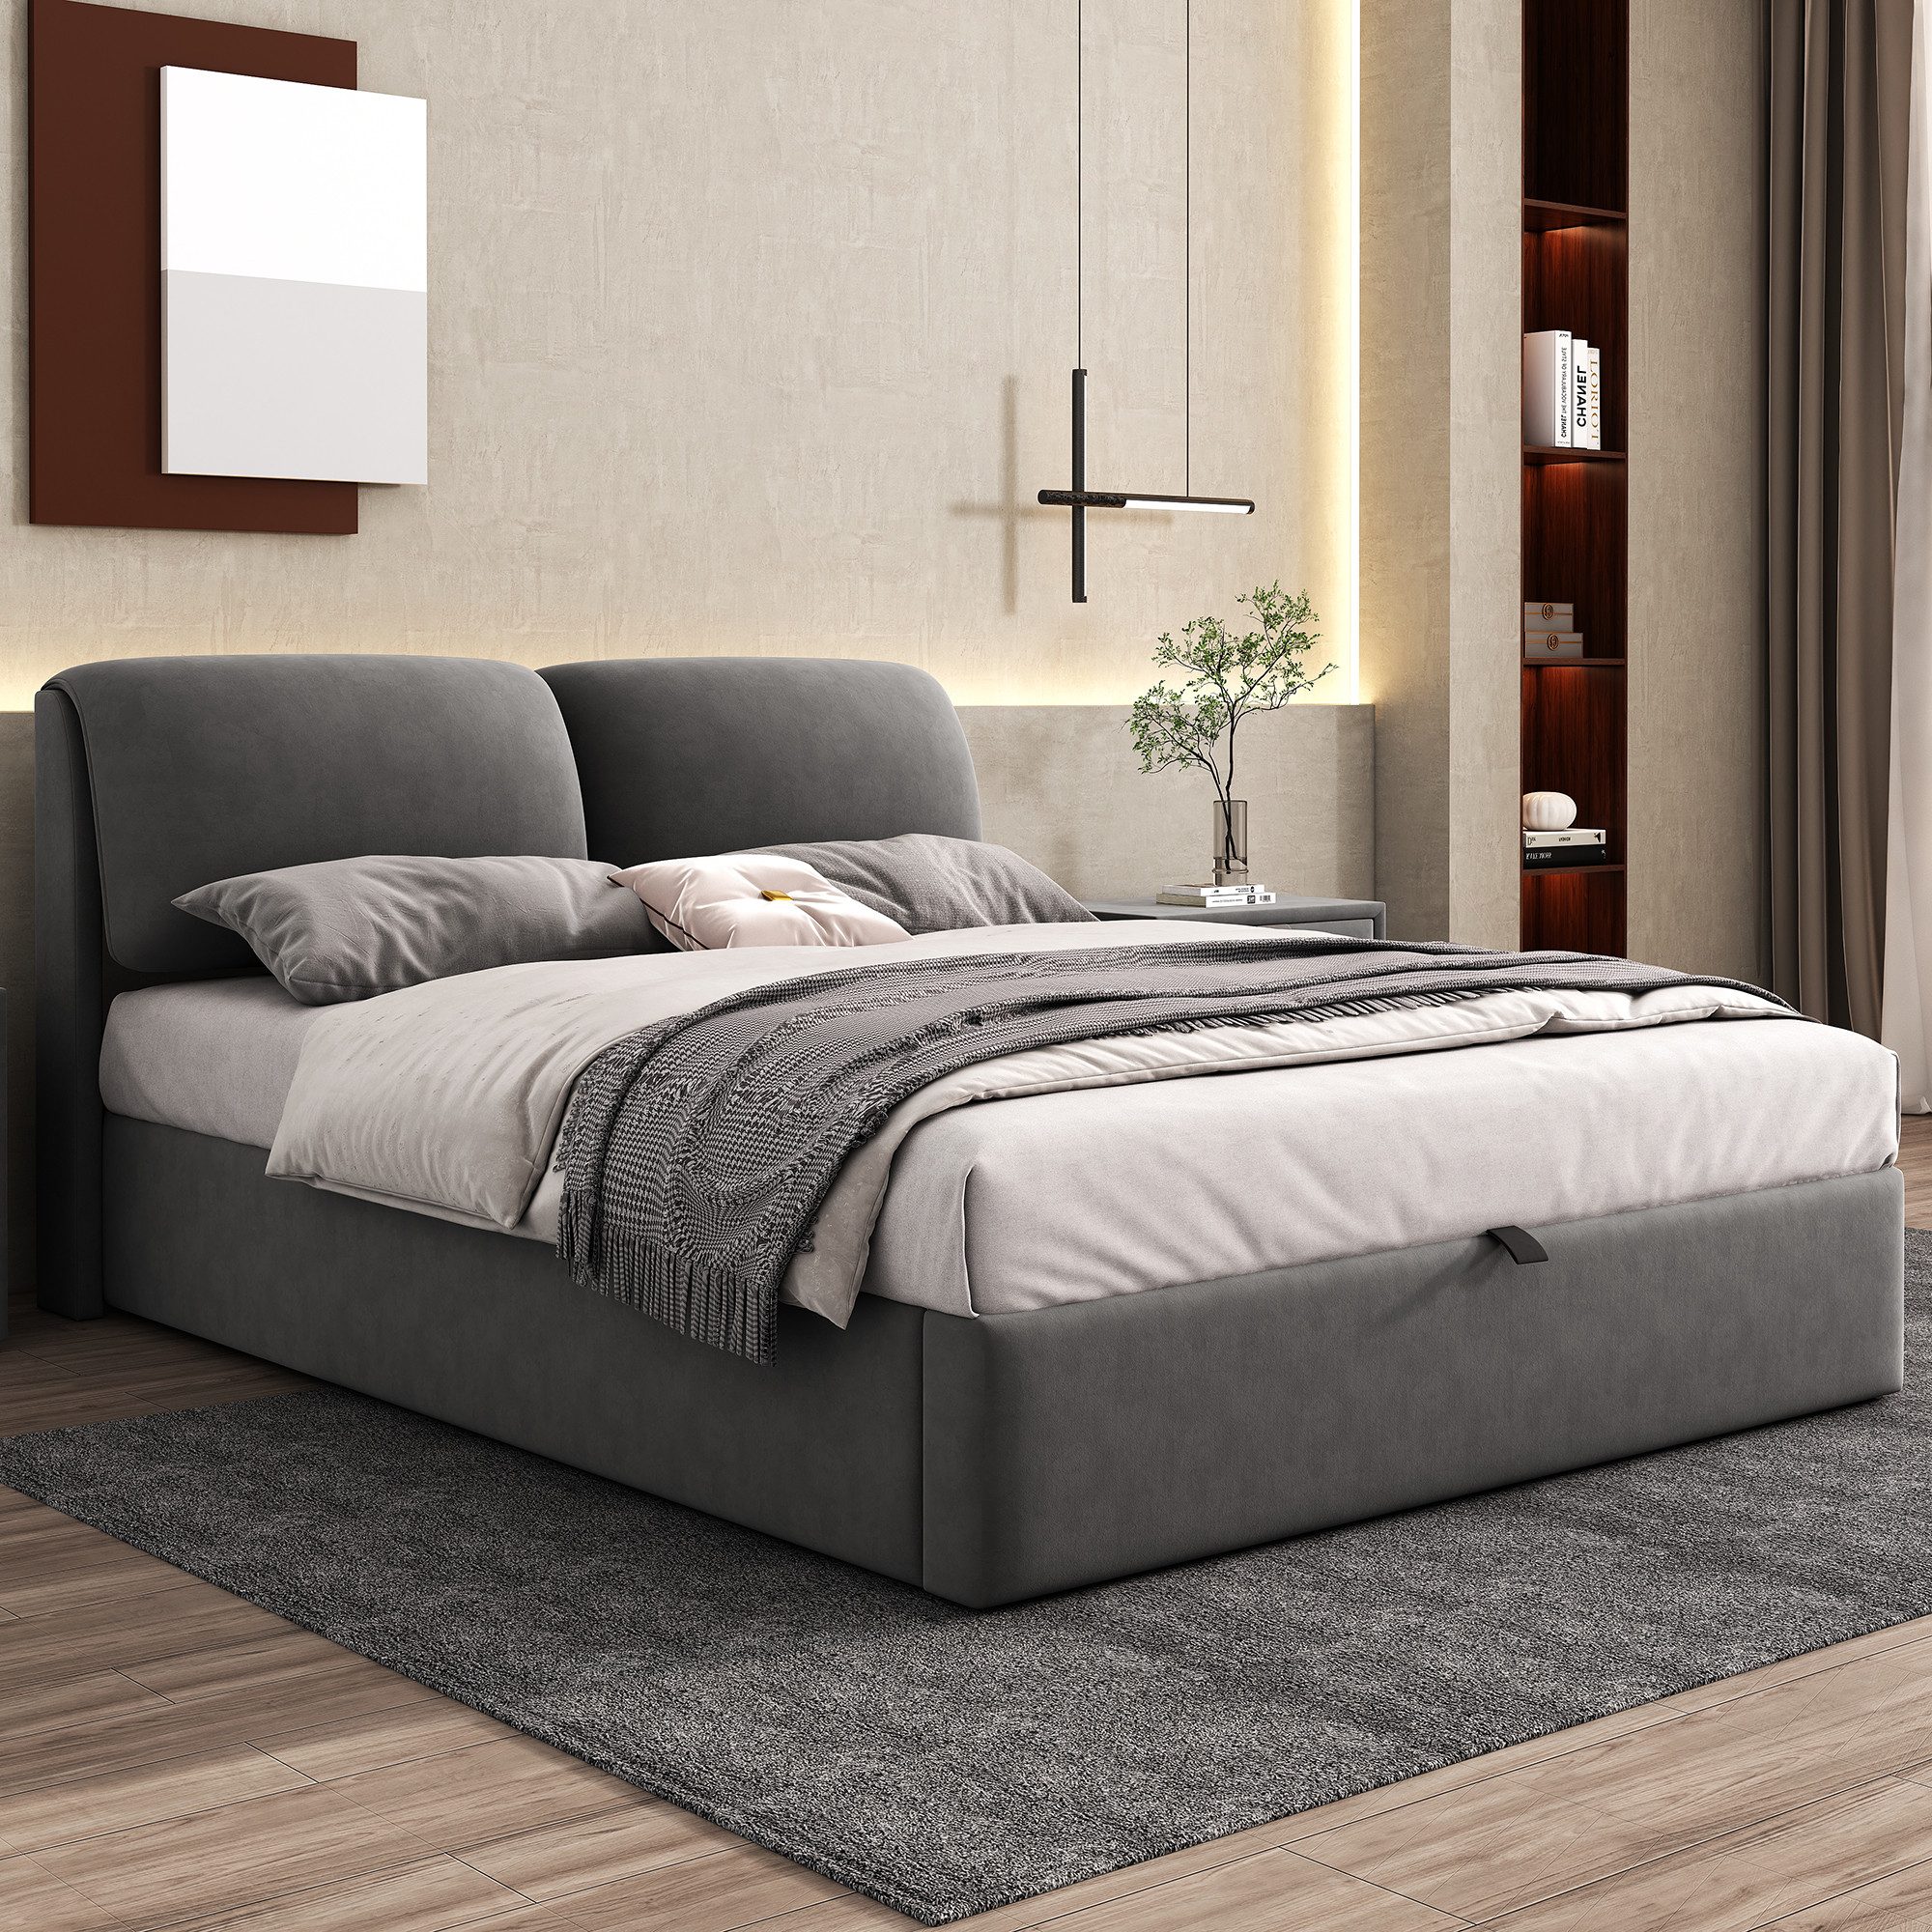 REDOM Polsterbett Hydraulisches Bett (140*200cm), mit 3 Schubladen,Bettkasten zur Aufbewahrung, Lattenrost mit Kopfteil